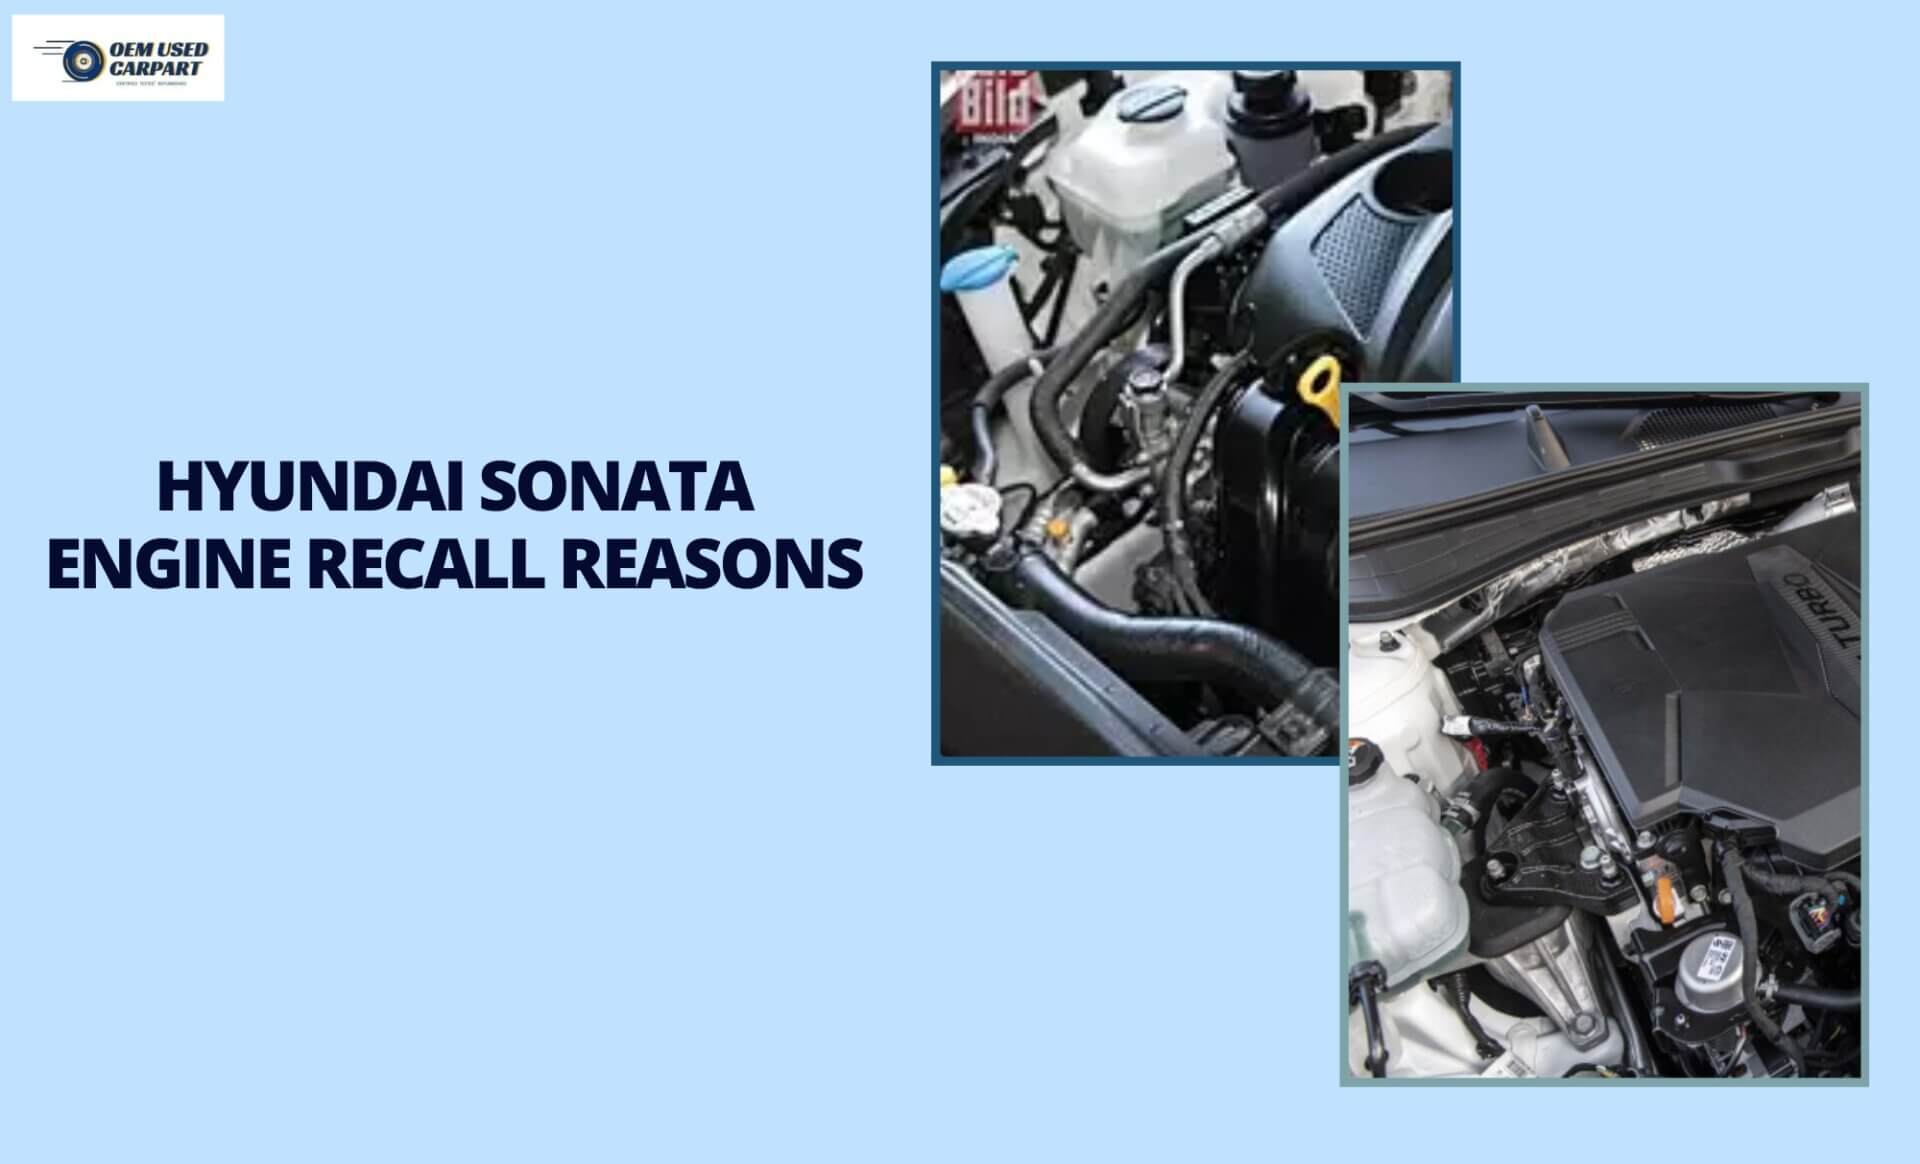 What is the Hyundai sonata engine recall?